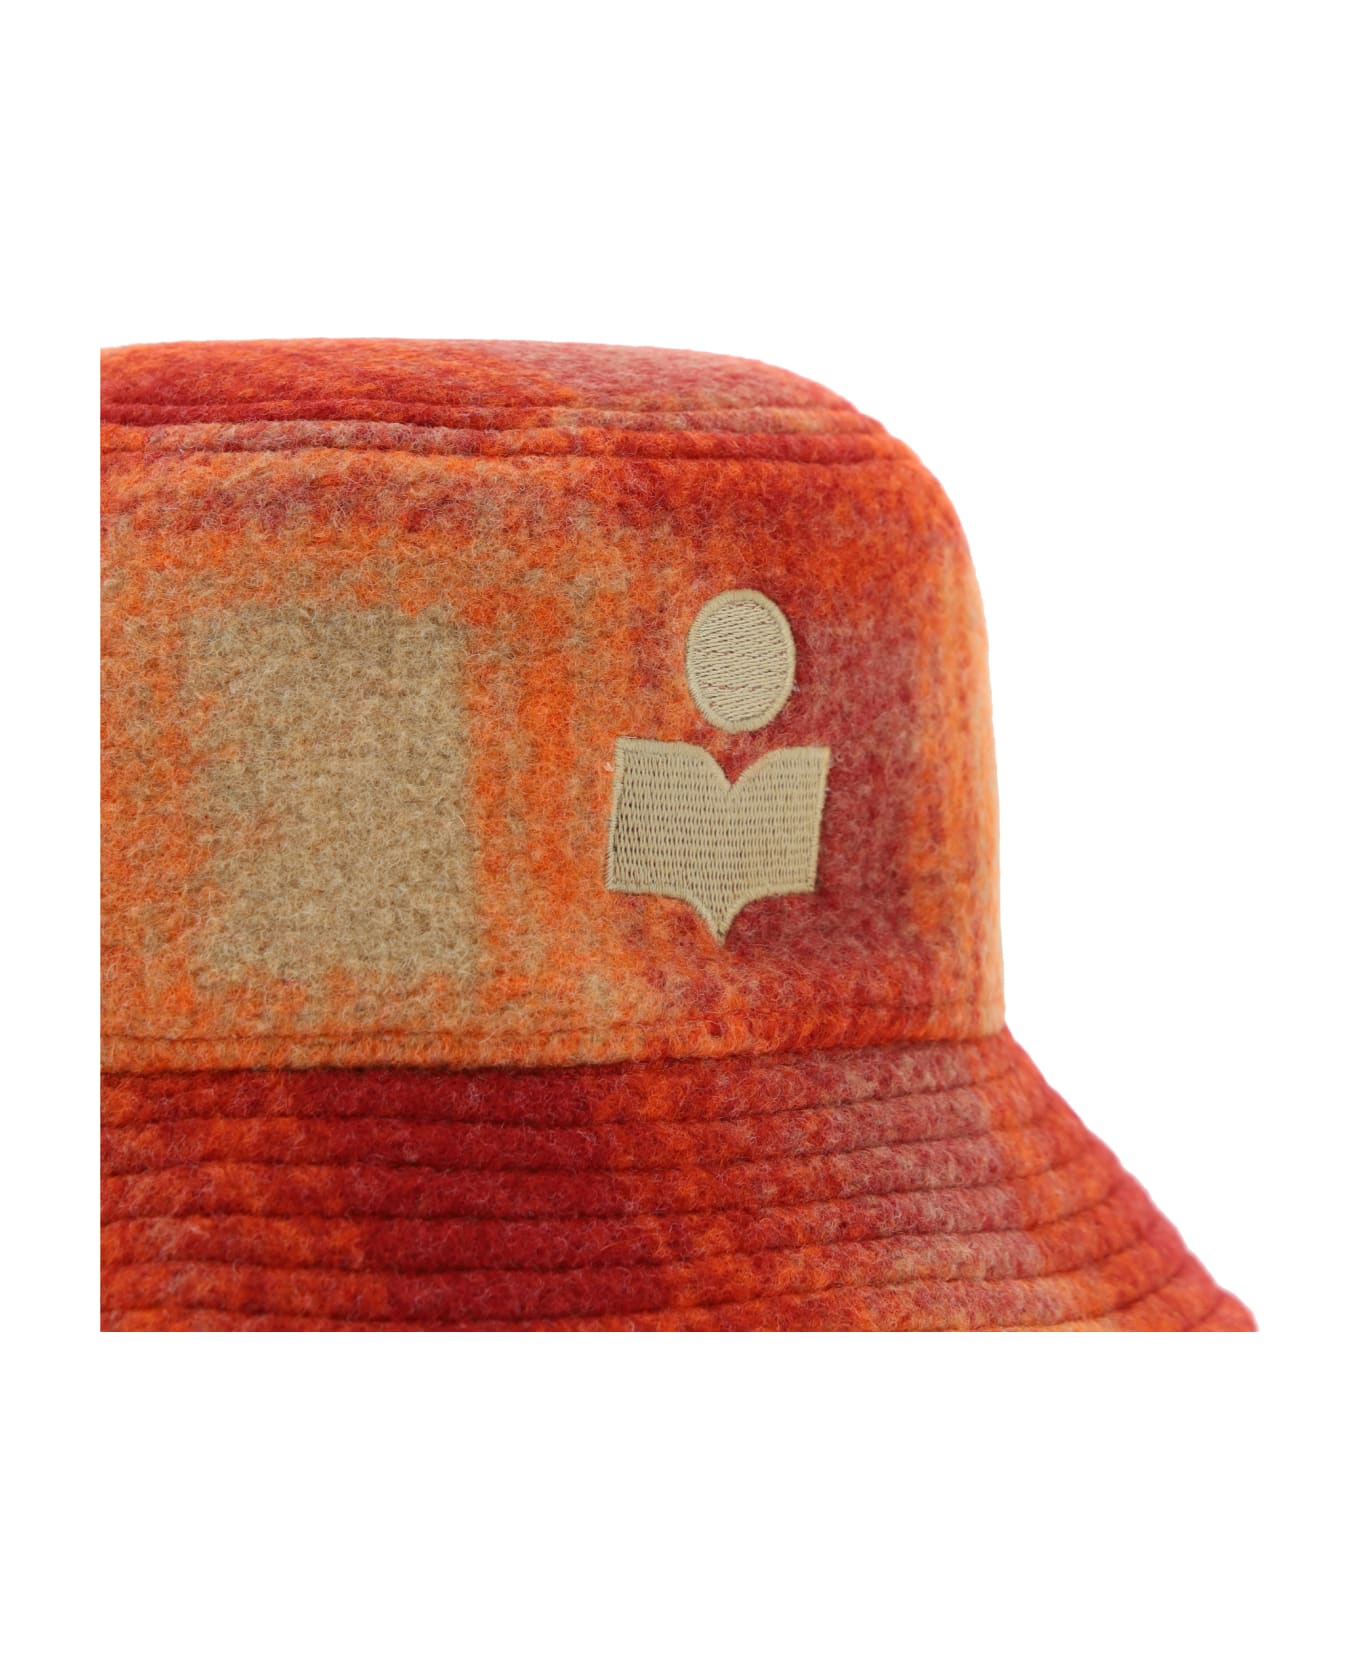 Isabel Marant Haley Bucket Hat - Orange